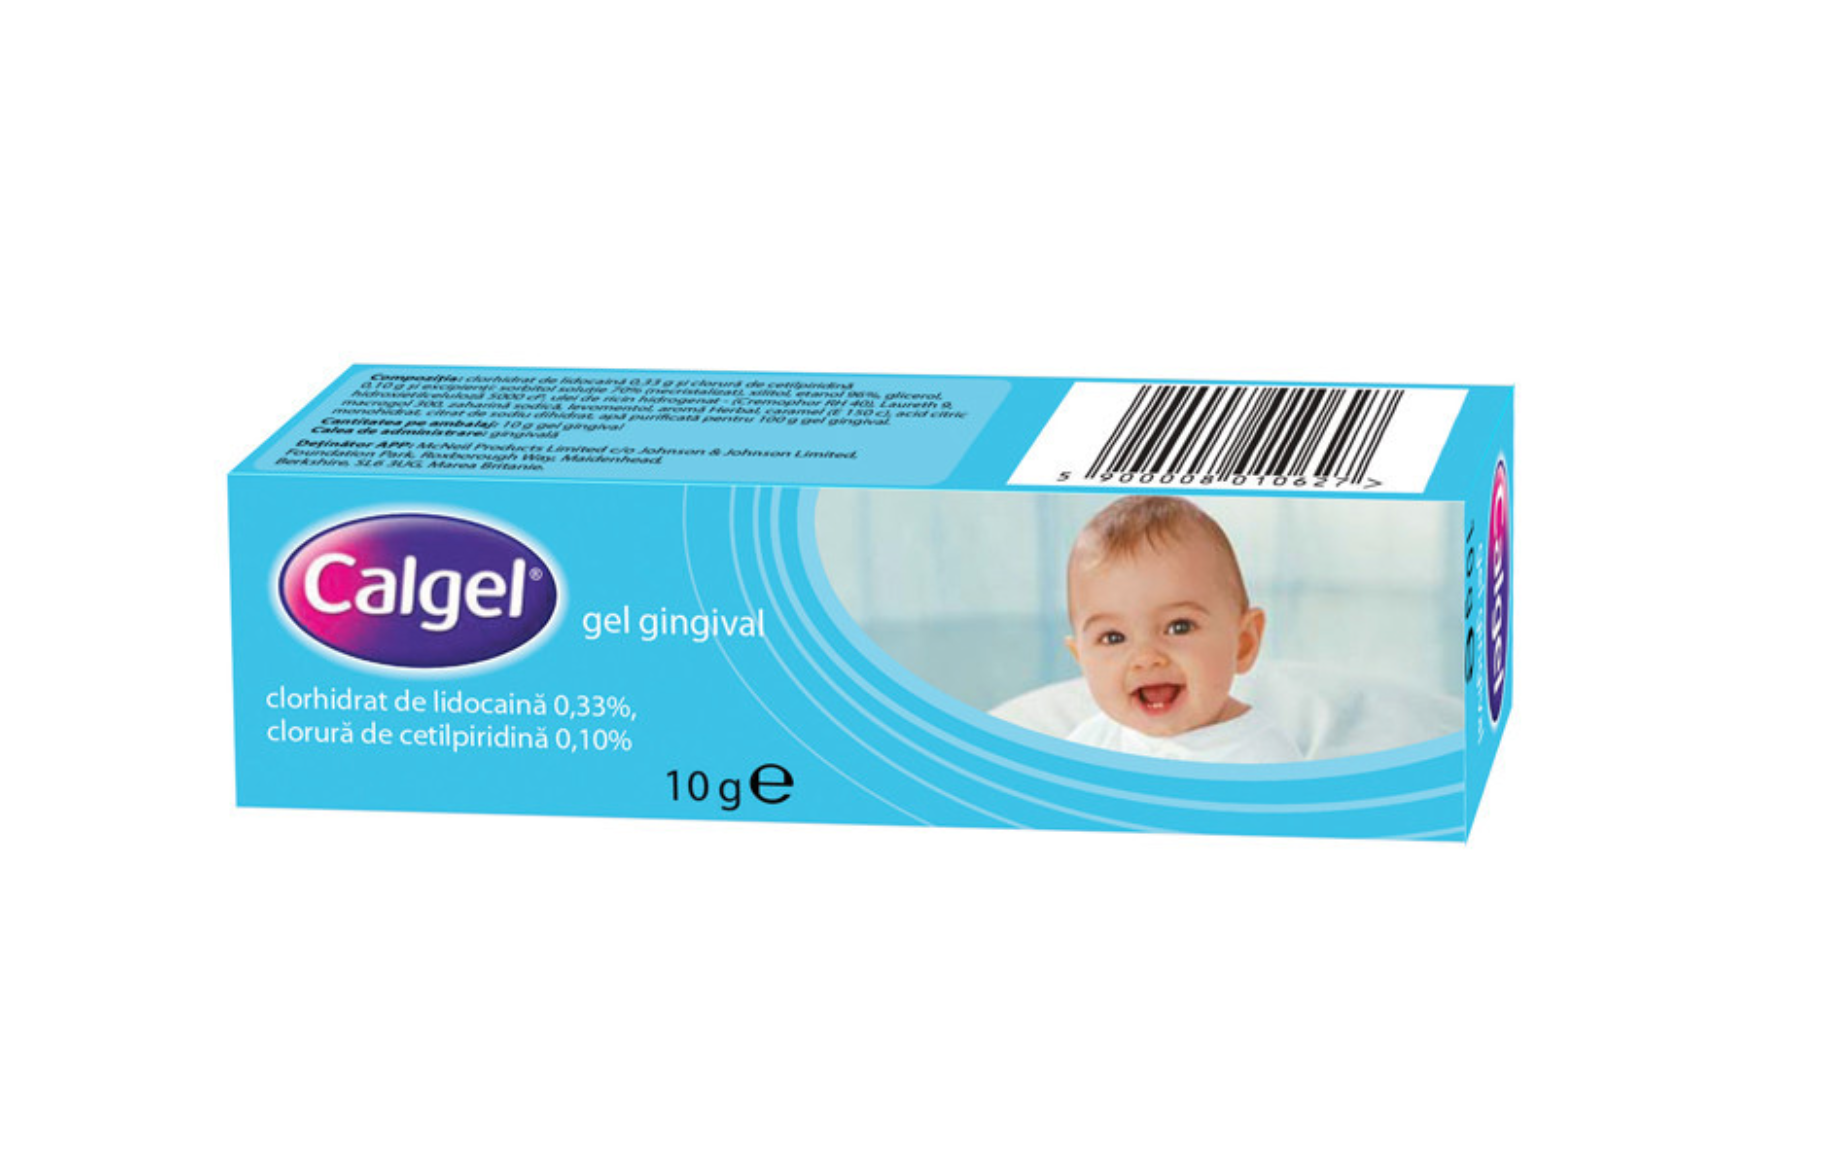 OTC (medicamente care se eliberează fără prescripție medicală) - Calgel gel gingival 10g, epastila.ro